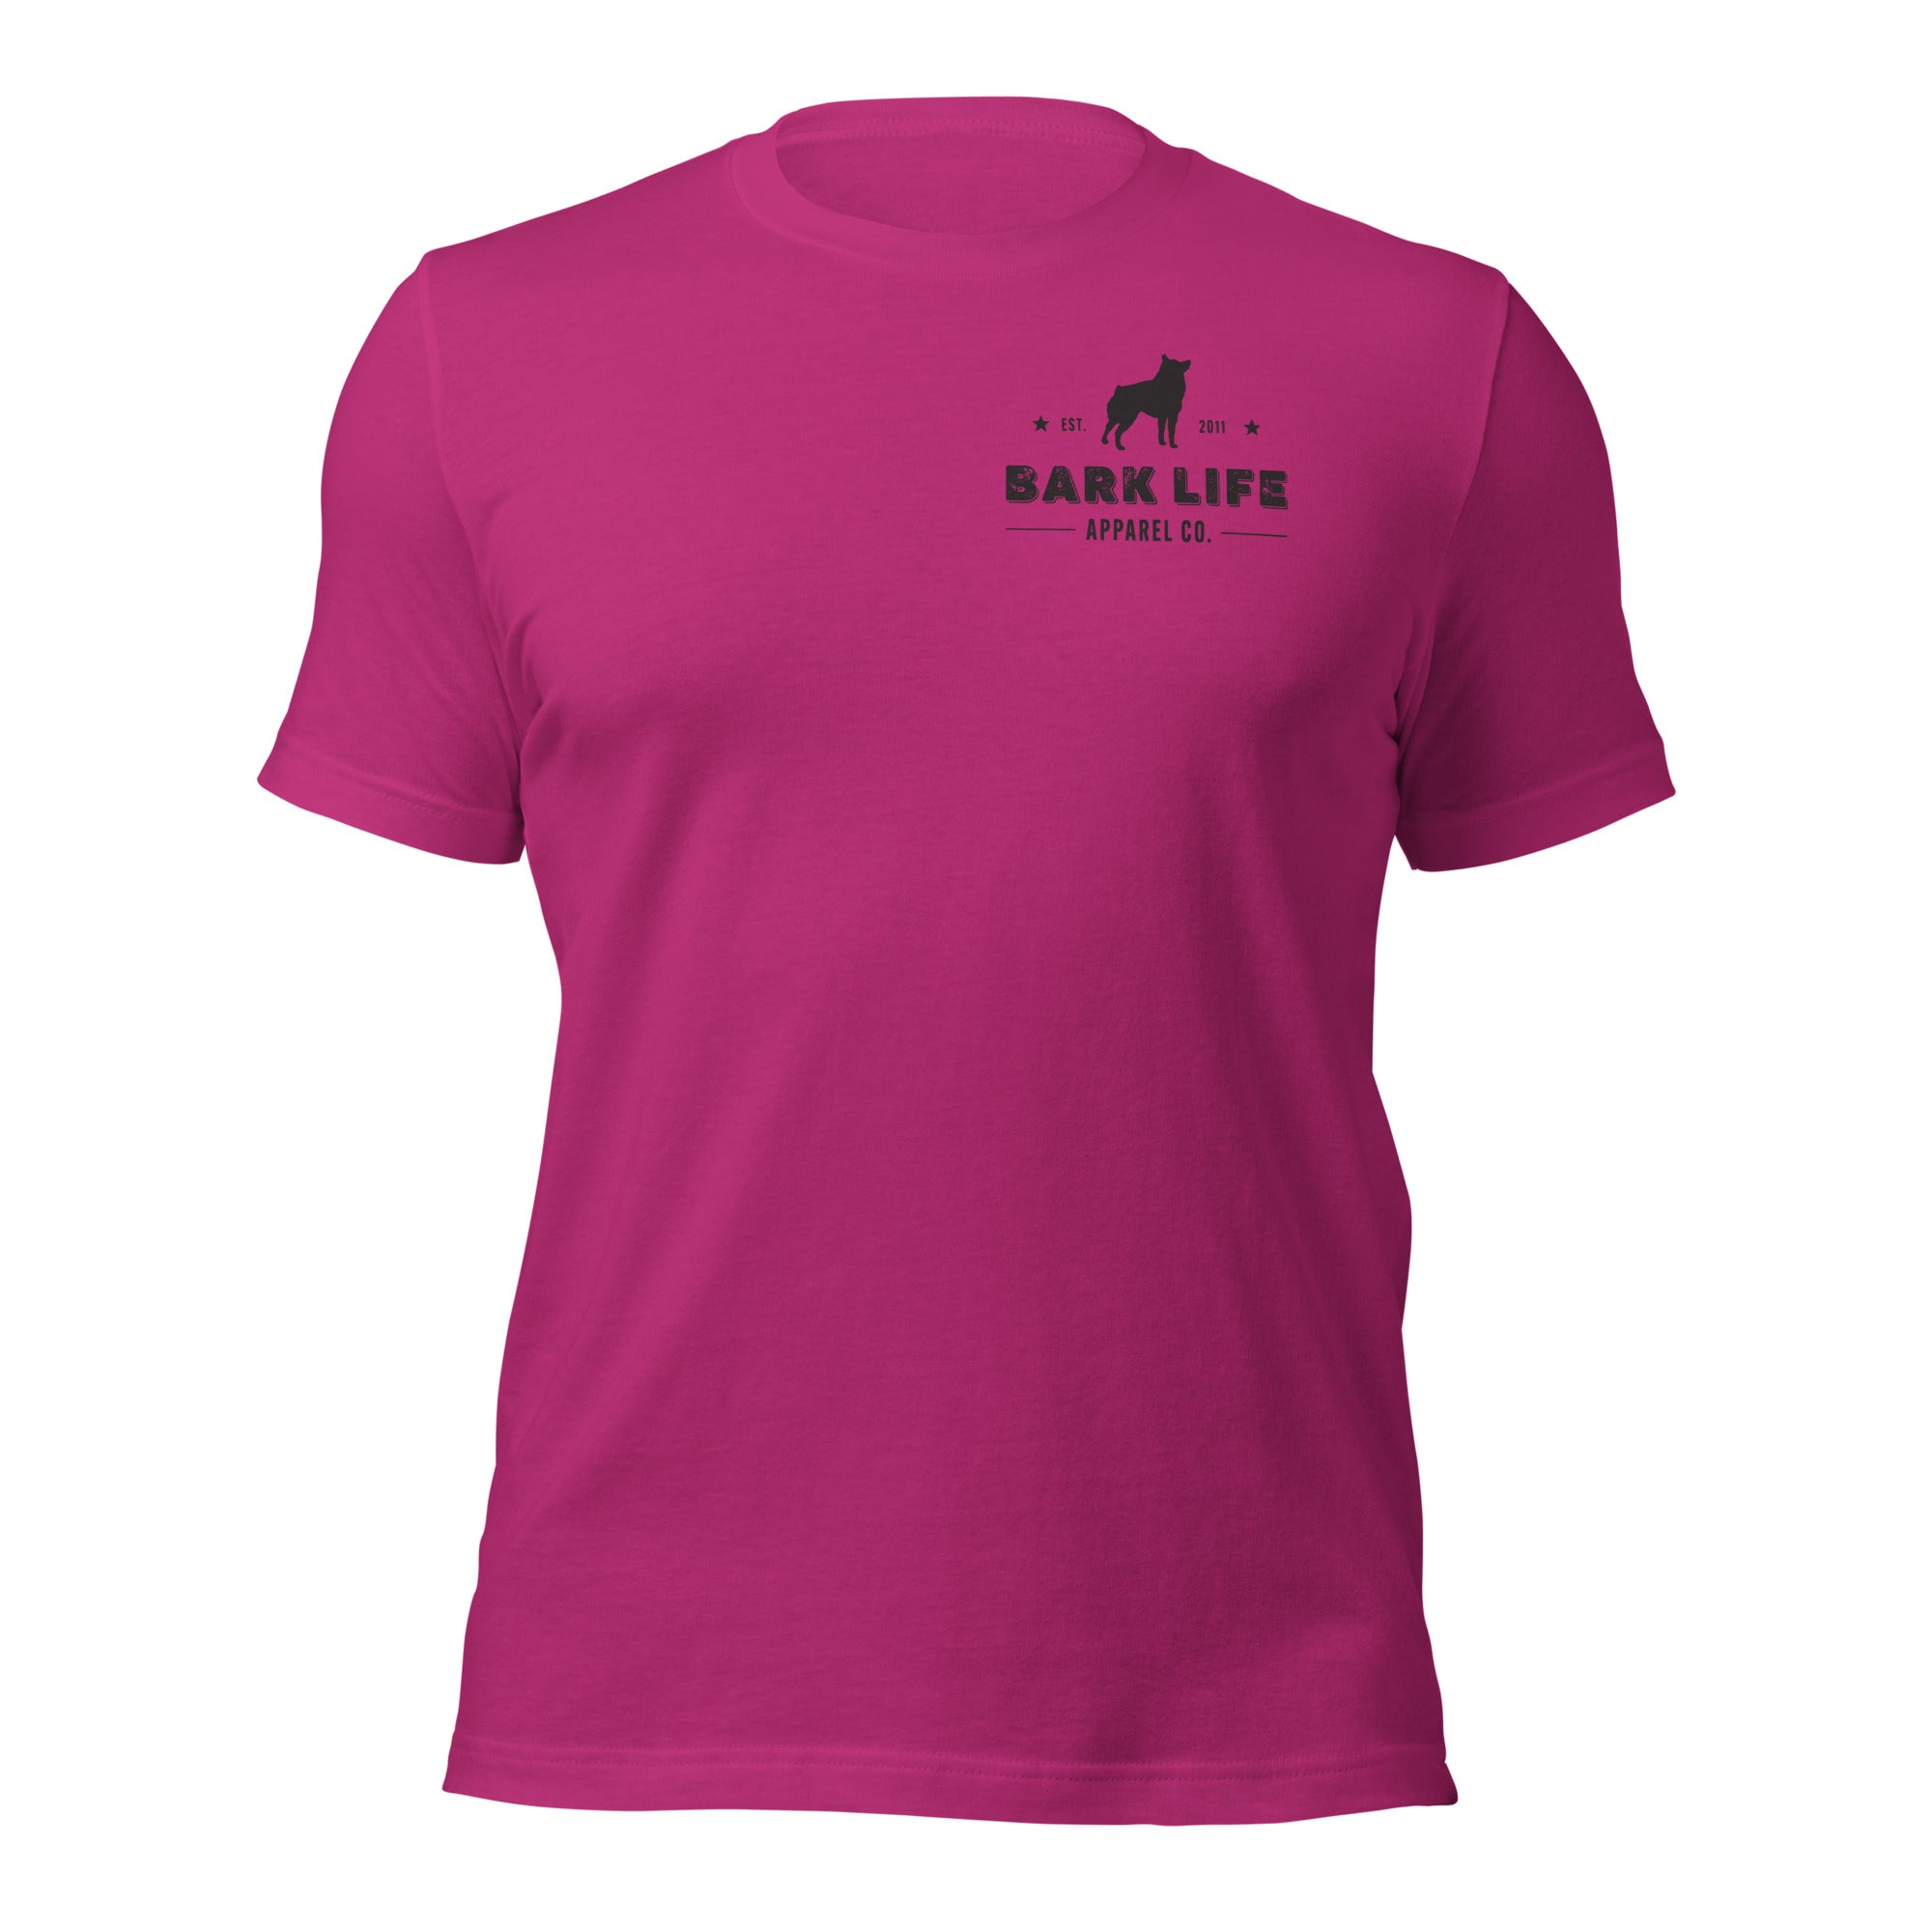 Schipperke - Short Sleeve Cotton Tee Shirt